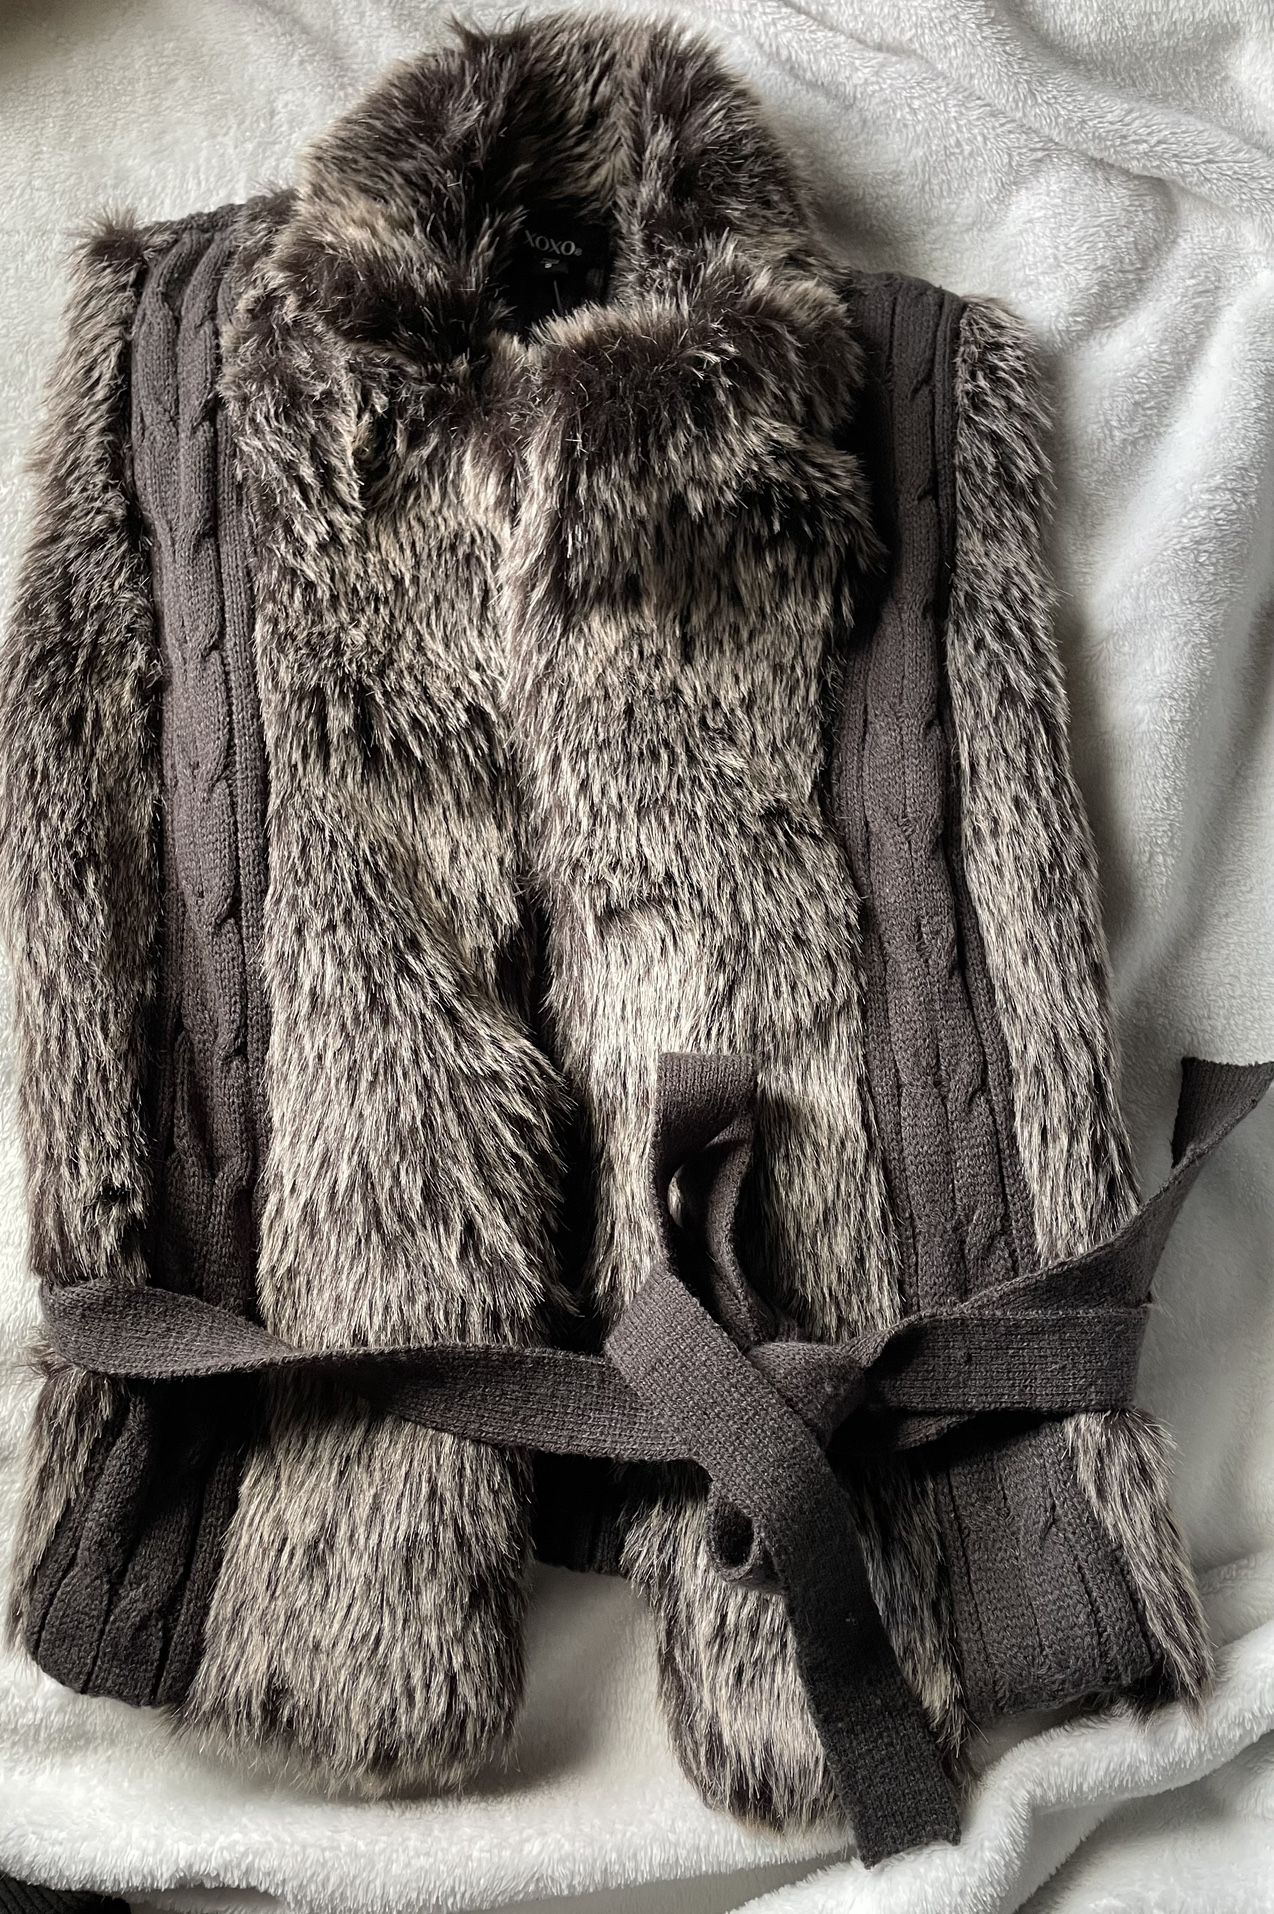 Womens Fur Vest